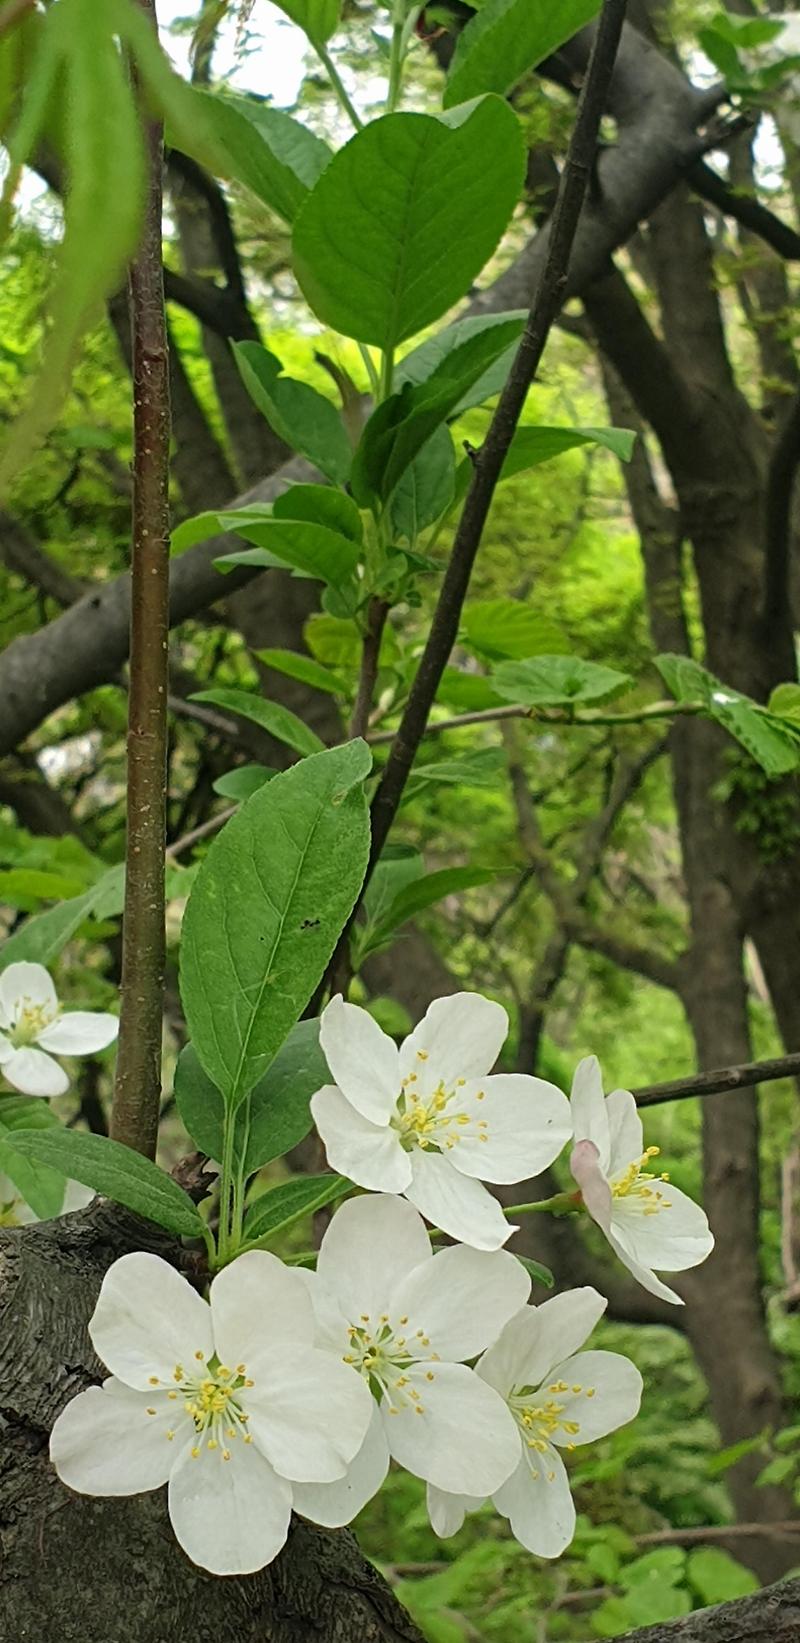 [꽃] 사과나무꽃 보시면서 4월 마지막 주말 즐겁게 보내세요